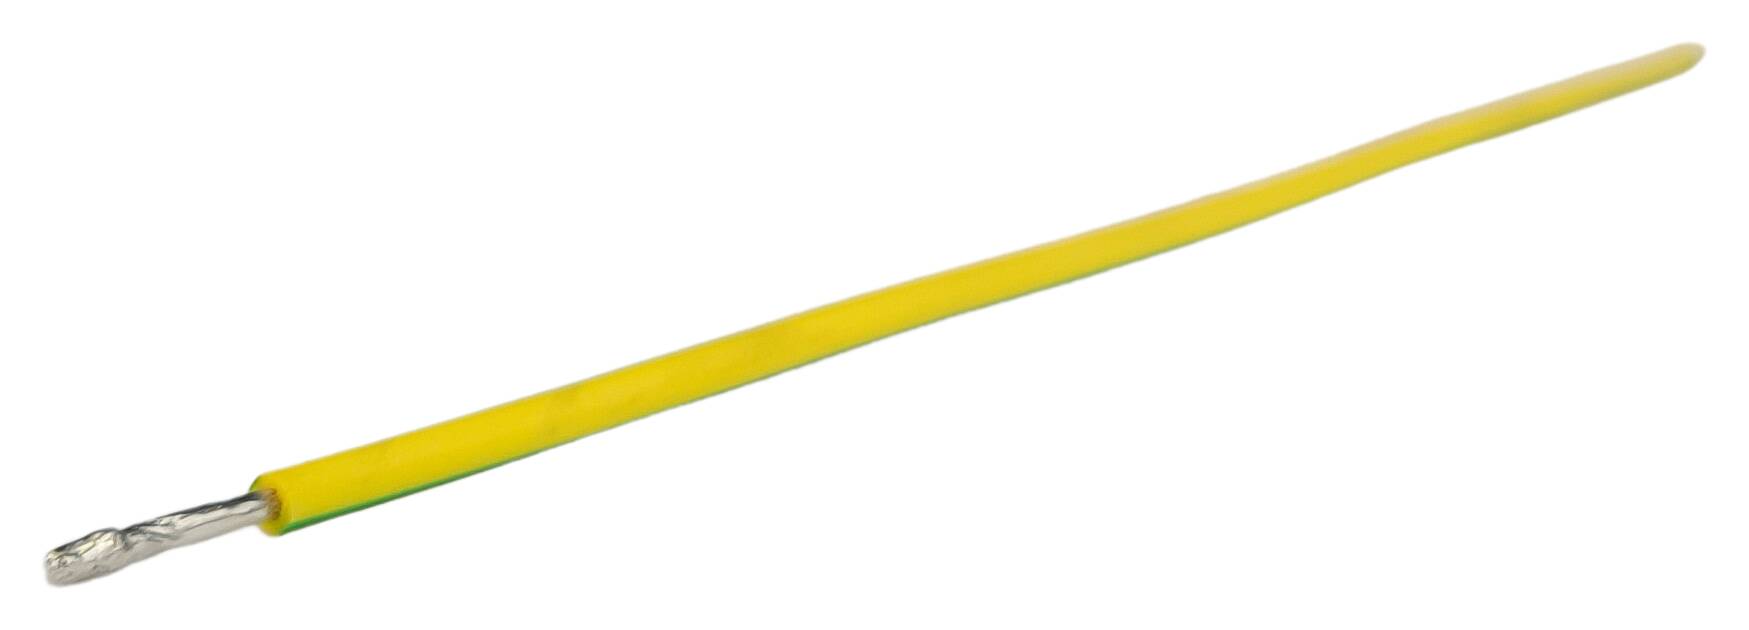 Litzen-Zuschnitt 1x1,50 halogenfrei 200 mm 11/11 verdrillt+verzinnt grün-gelb